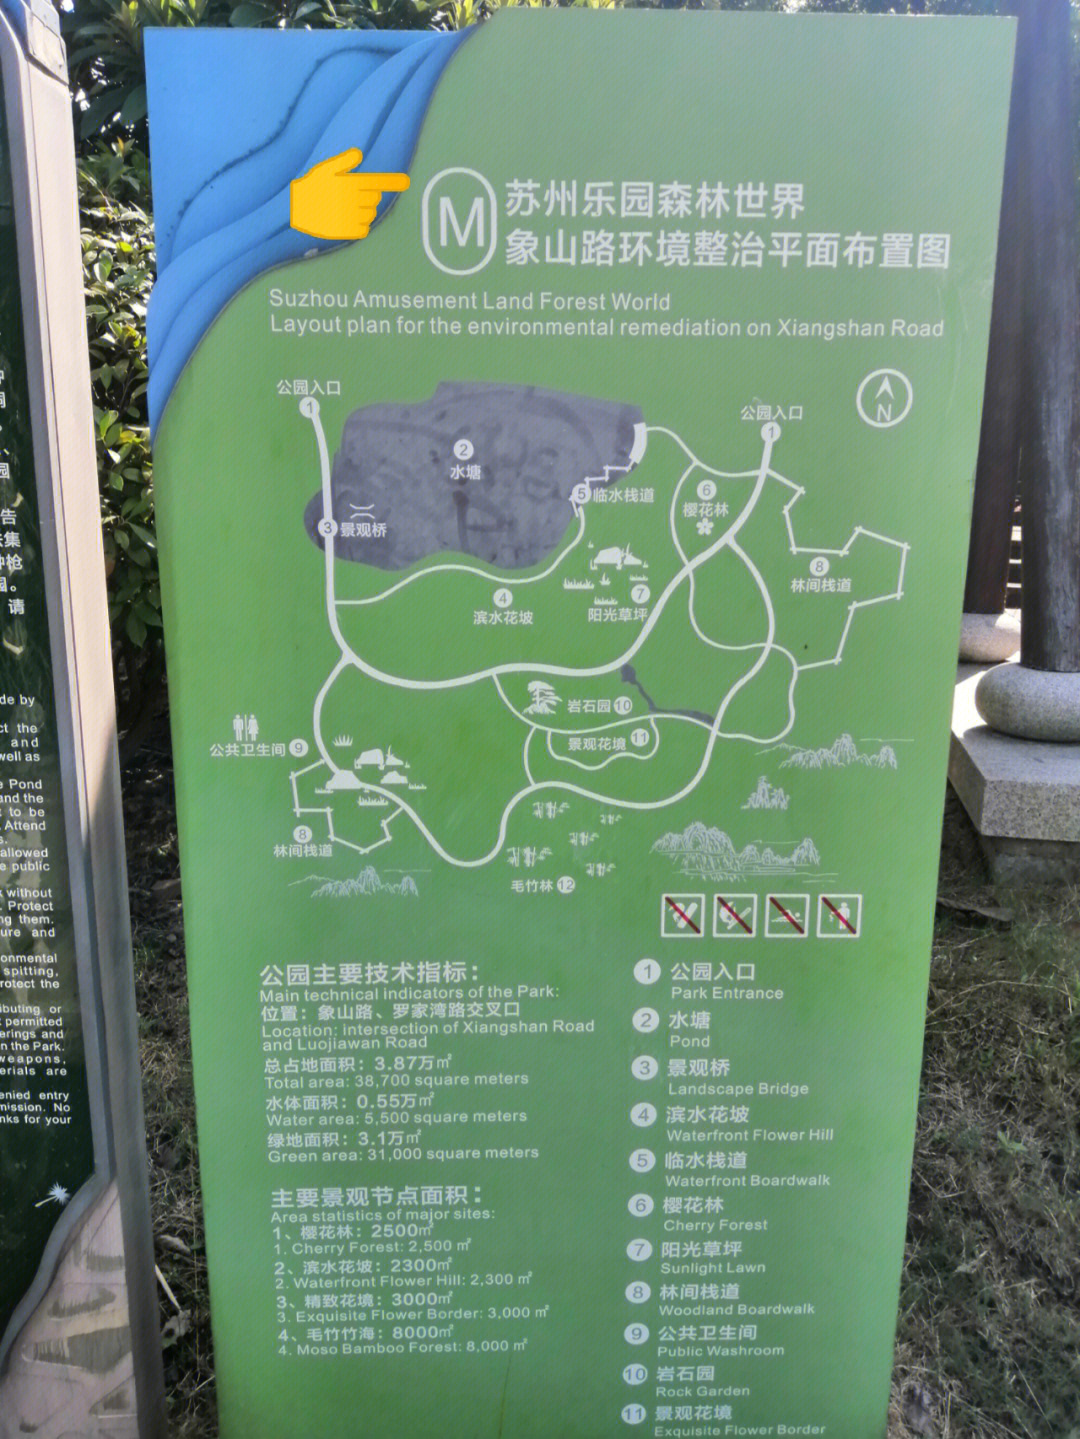 龙泉东安湖公园地址图片